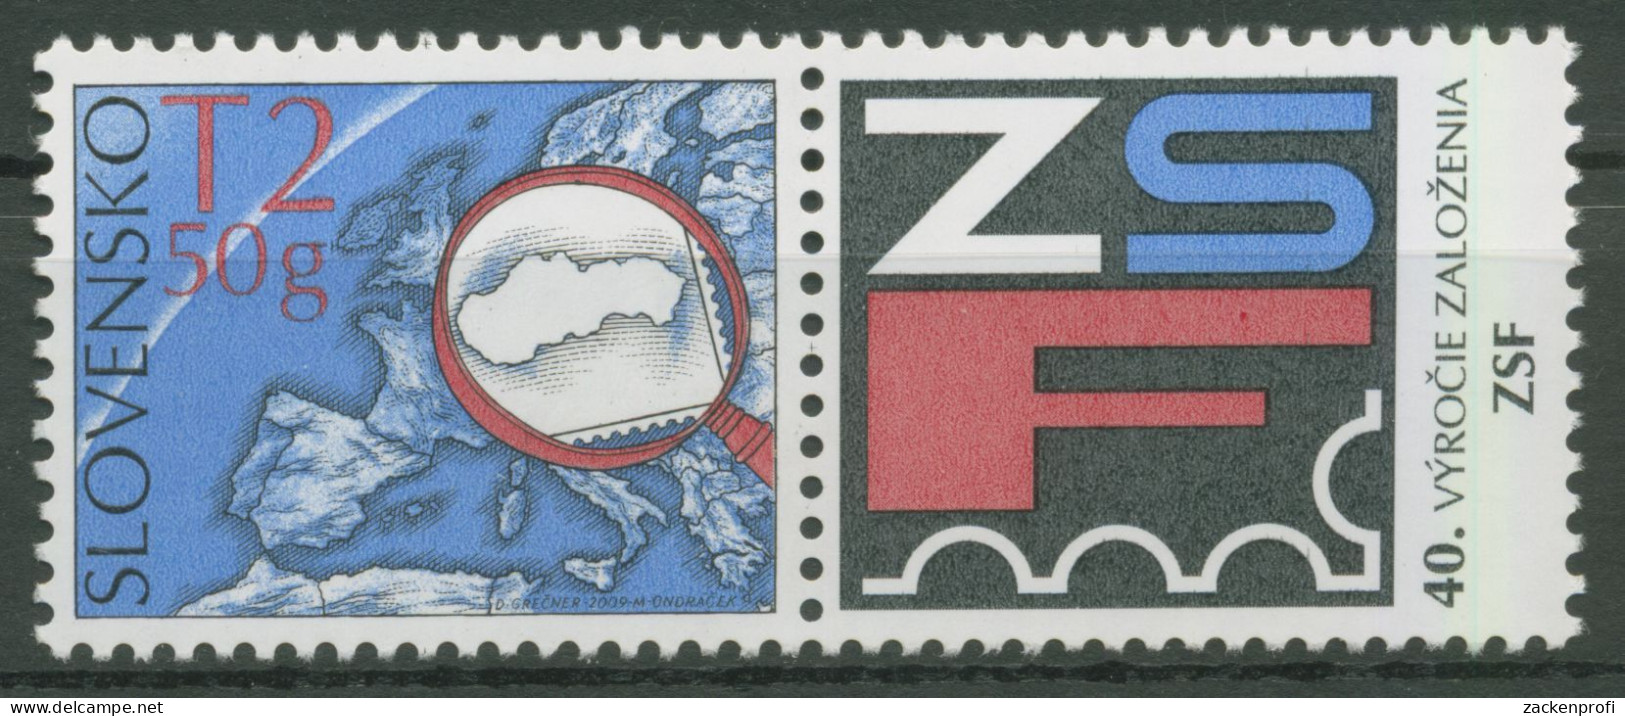 Slowakei 2009 Philatelistenverband 613 Zf Postfrisch - Nuevos